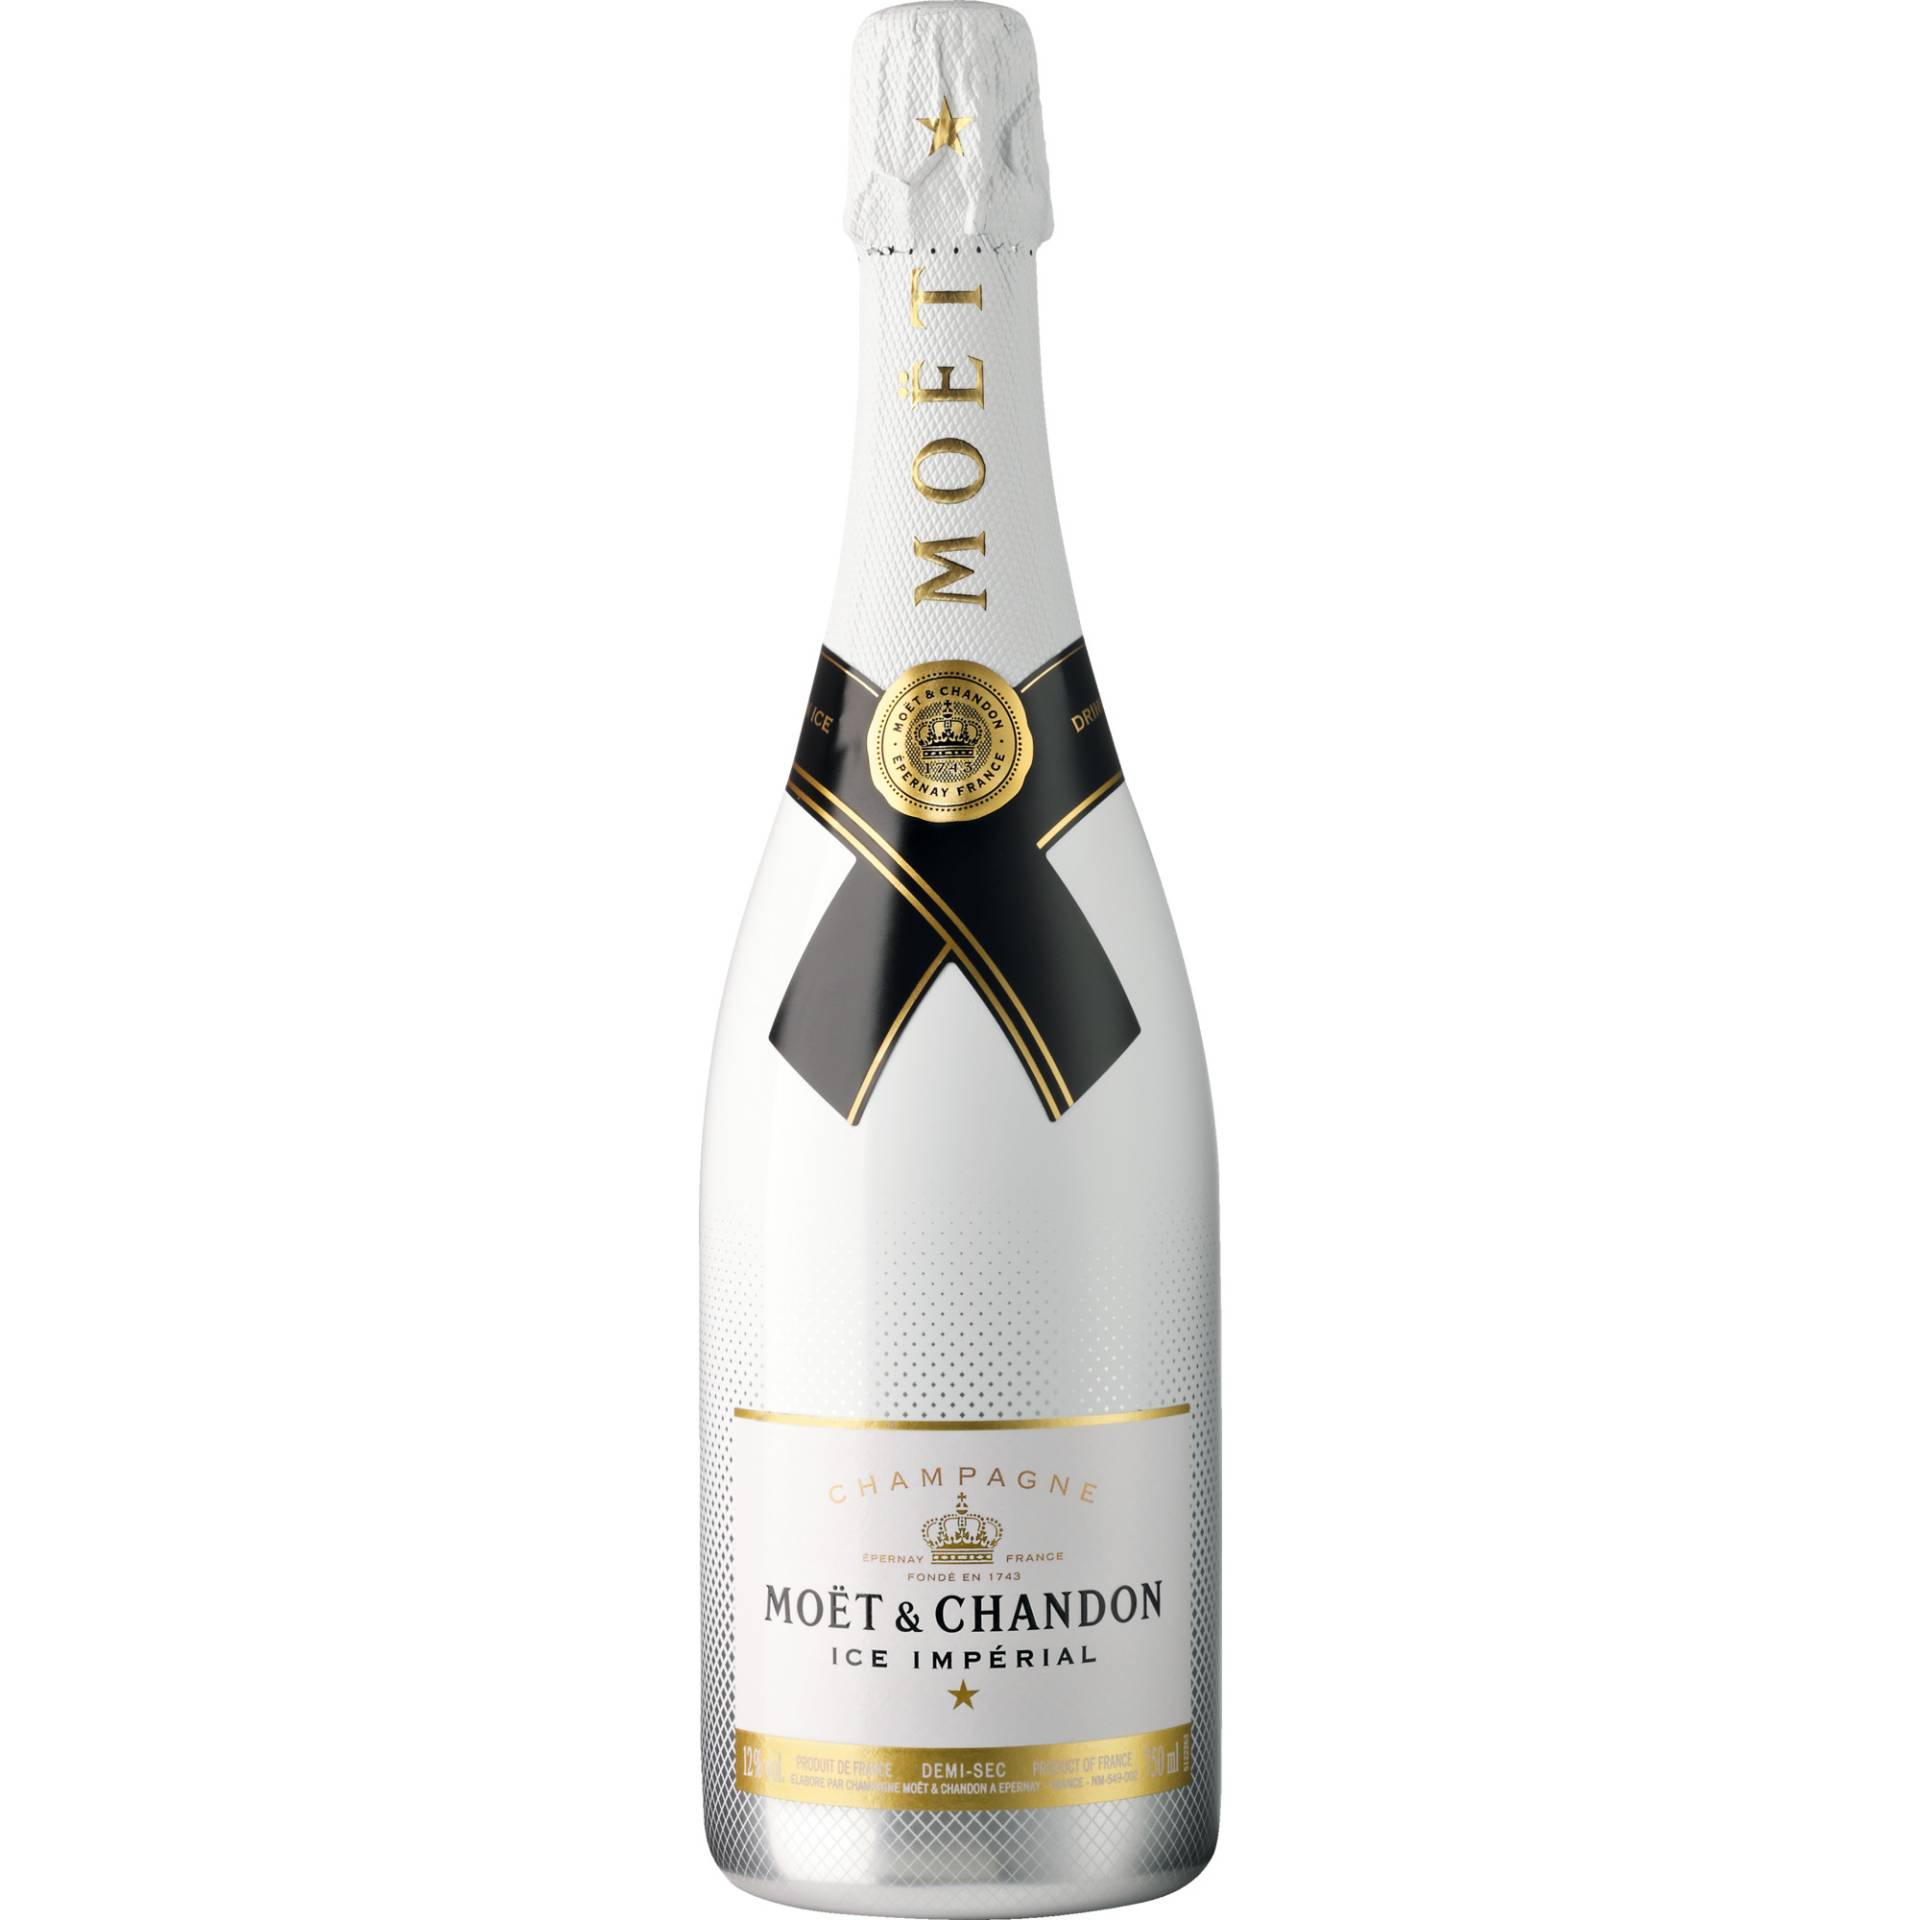 Champagne Moet & Chandon Ice Imperial, Demi Sec, Champagne AC, Champagne, Schaumwein von Moet Hennessy Deutschland GmbH, Seidlstr. 23 80335 München